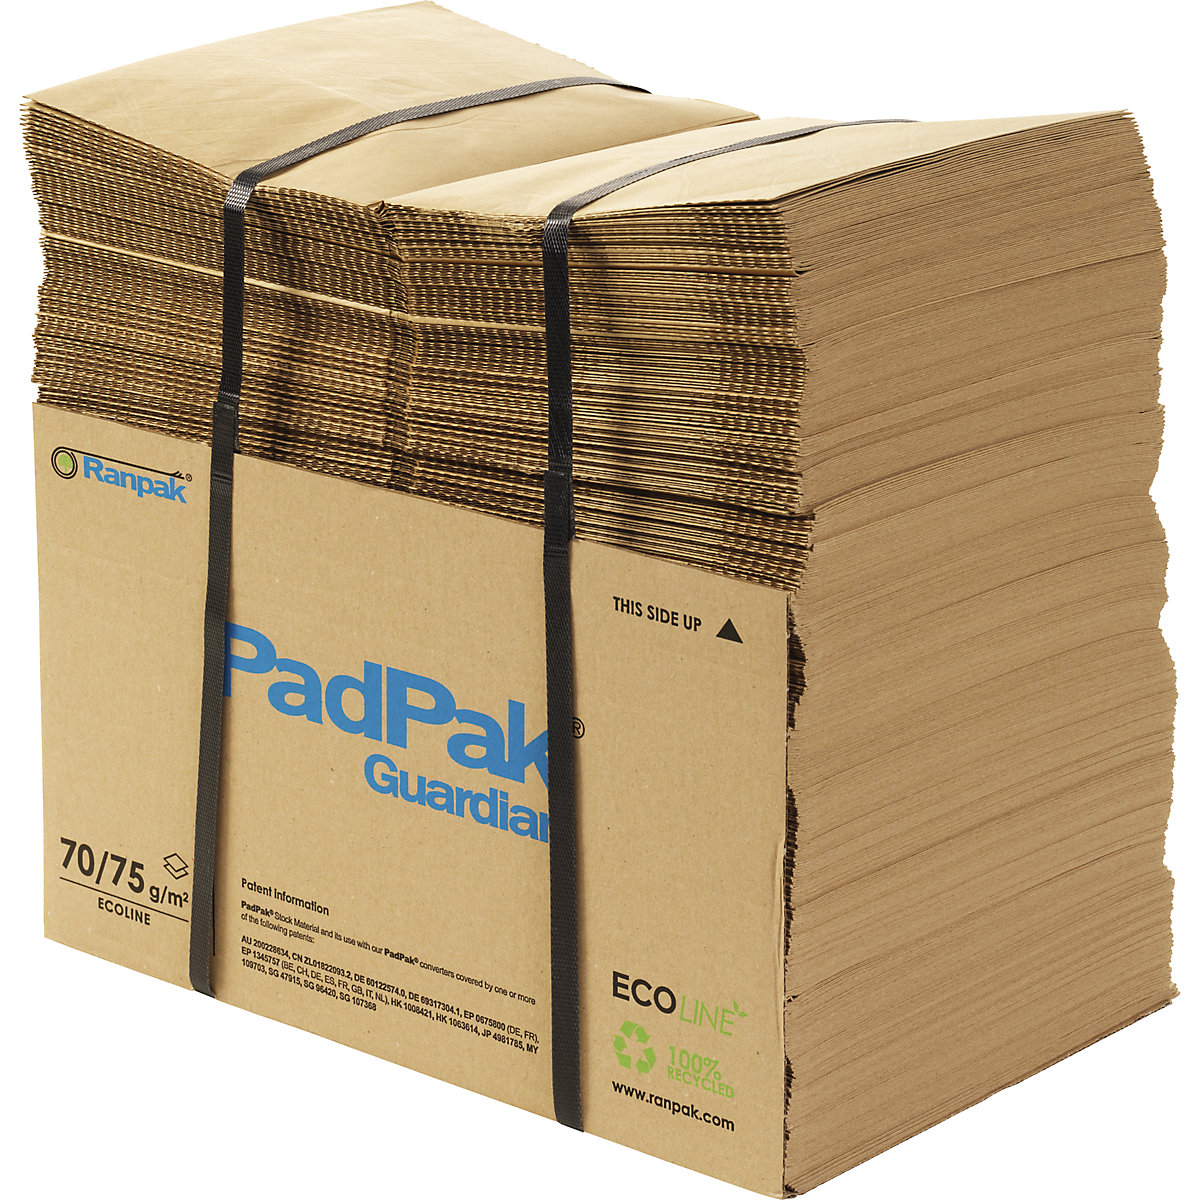 PadPak Guardian Papier, recycelt terra